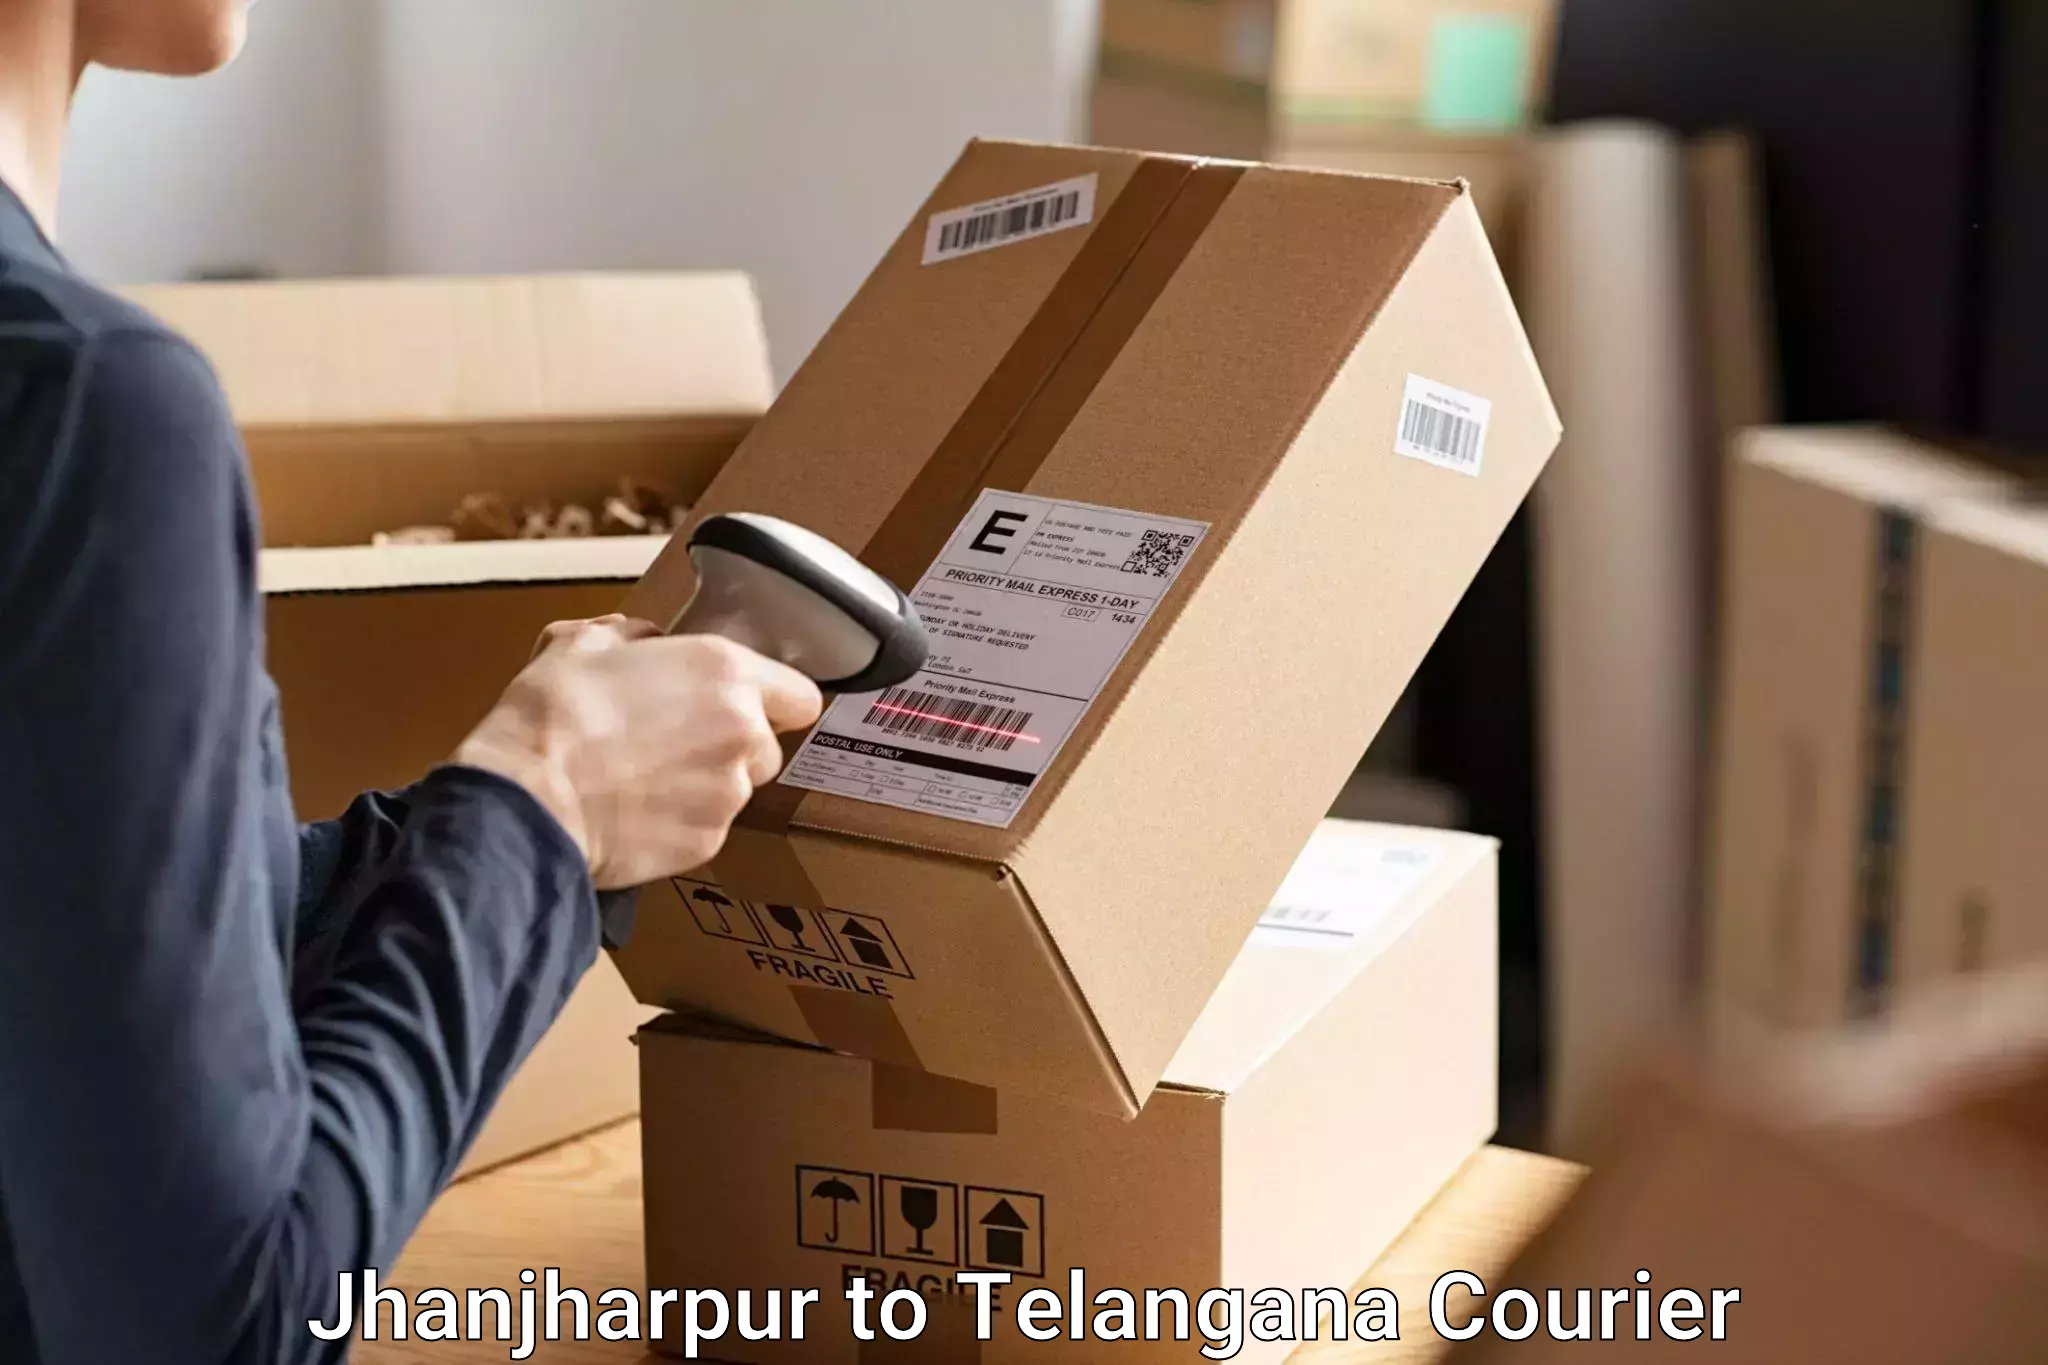 Baggage courier service Jhanjharpur to Dharmapuri Jagtial